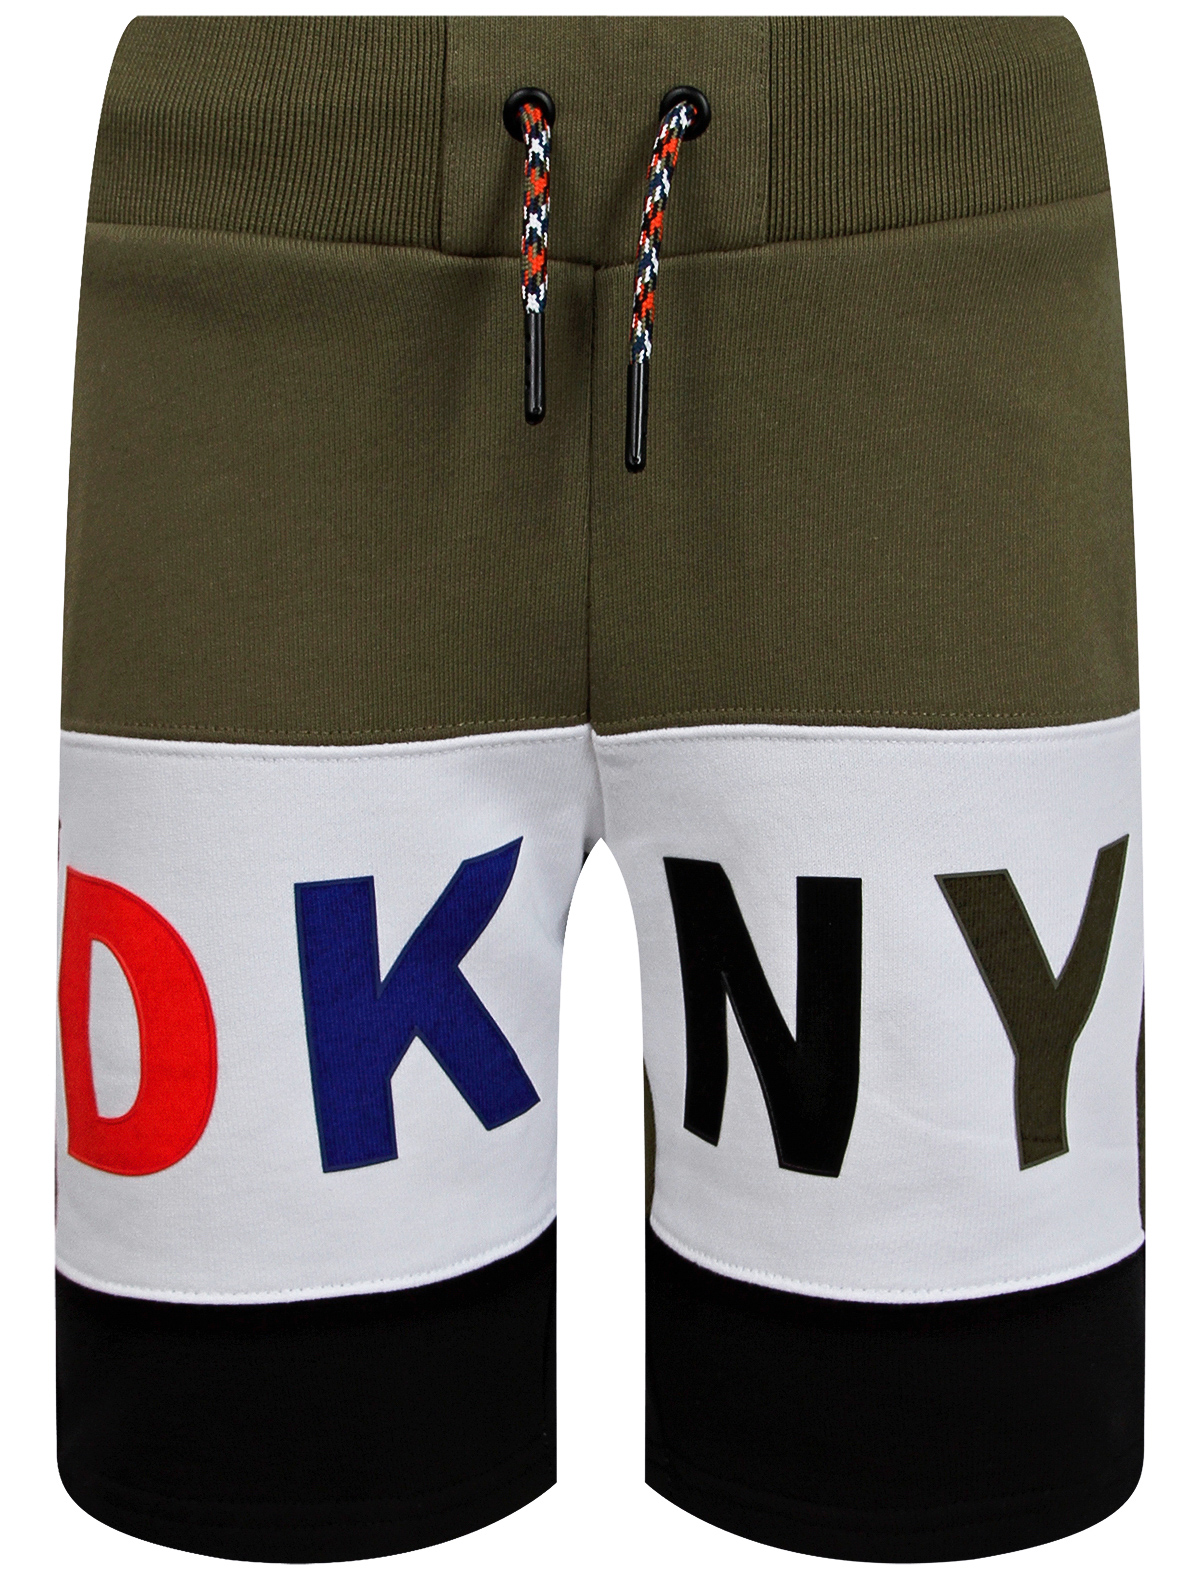 Шорты DKNY разноцветного цвета